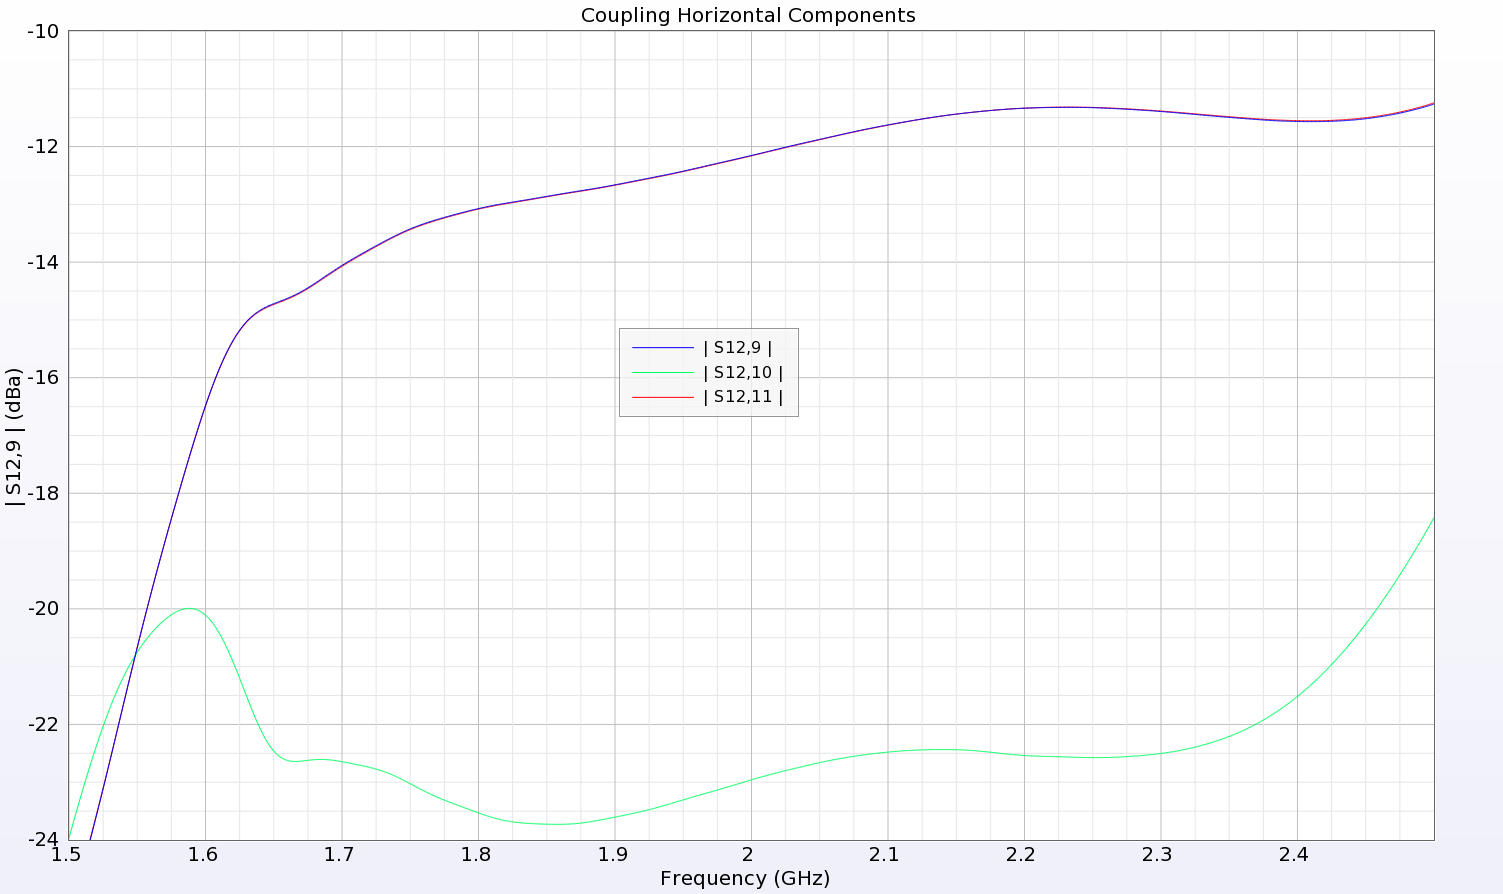 图 7：磁偶极子阵列元件之间的耦合低于 -10 dB，对角线对面元件的耦合更低。